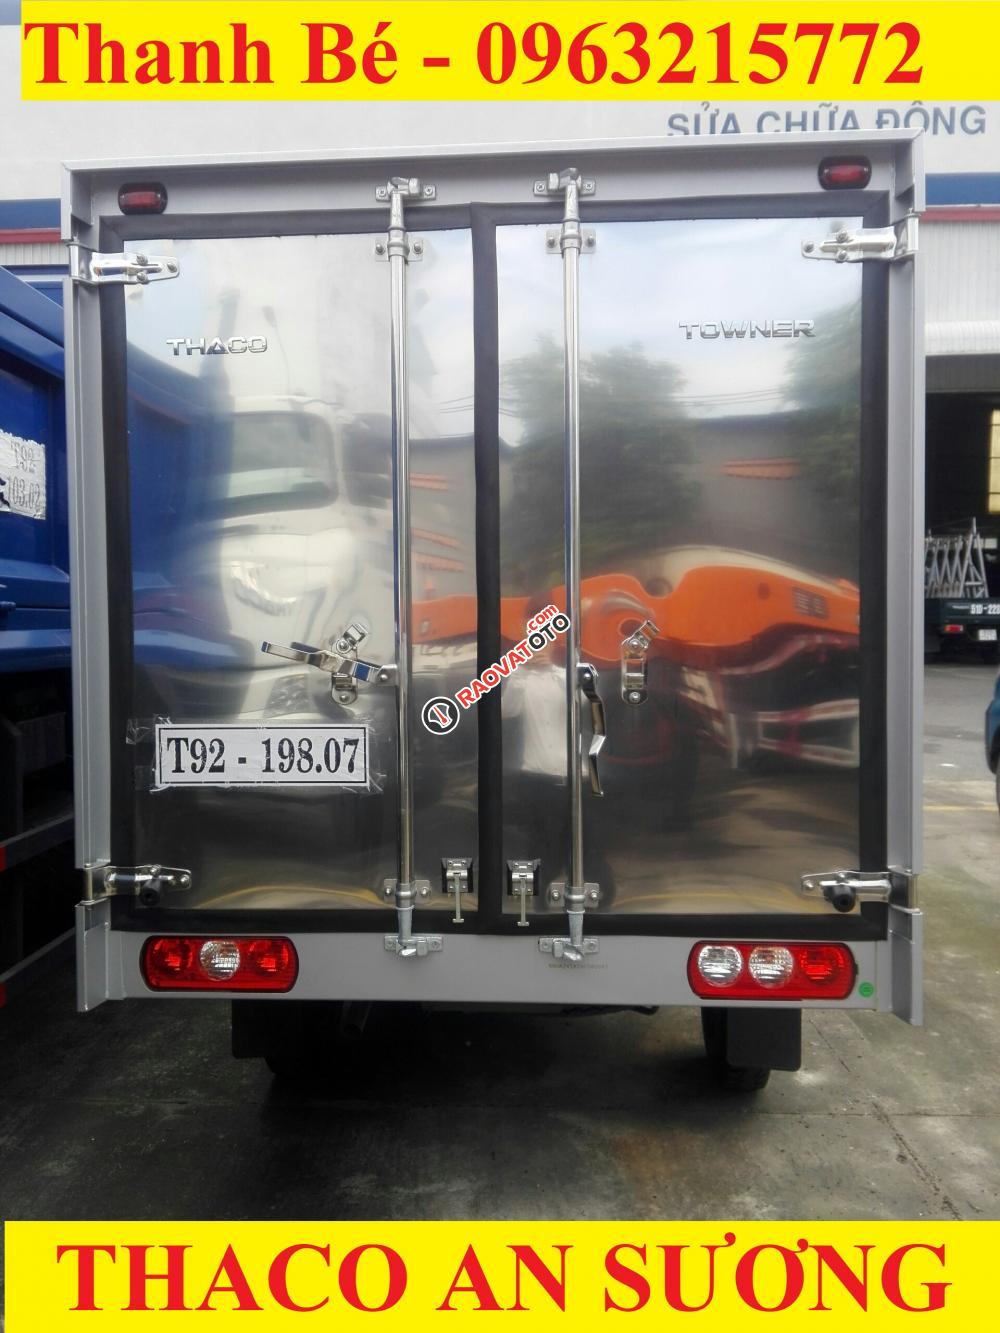 Bán xe tải Thaco Towner 990 mới ra, tải trọng 990 kg-2